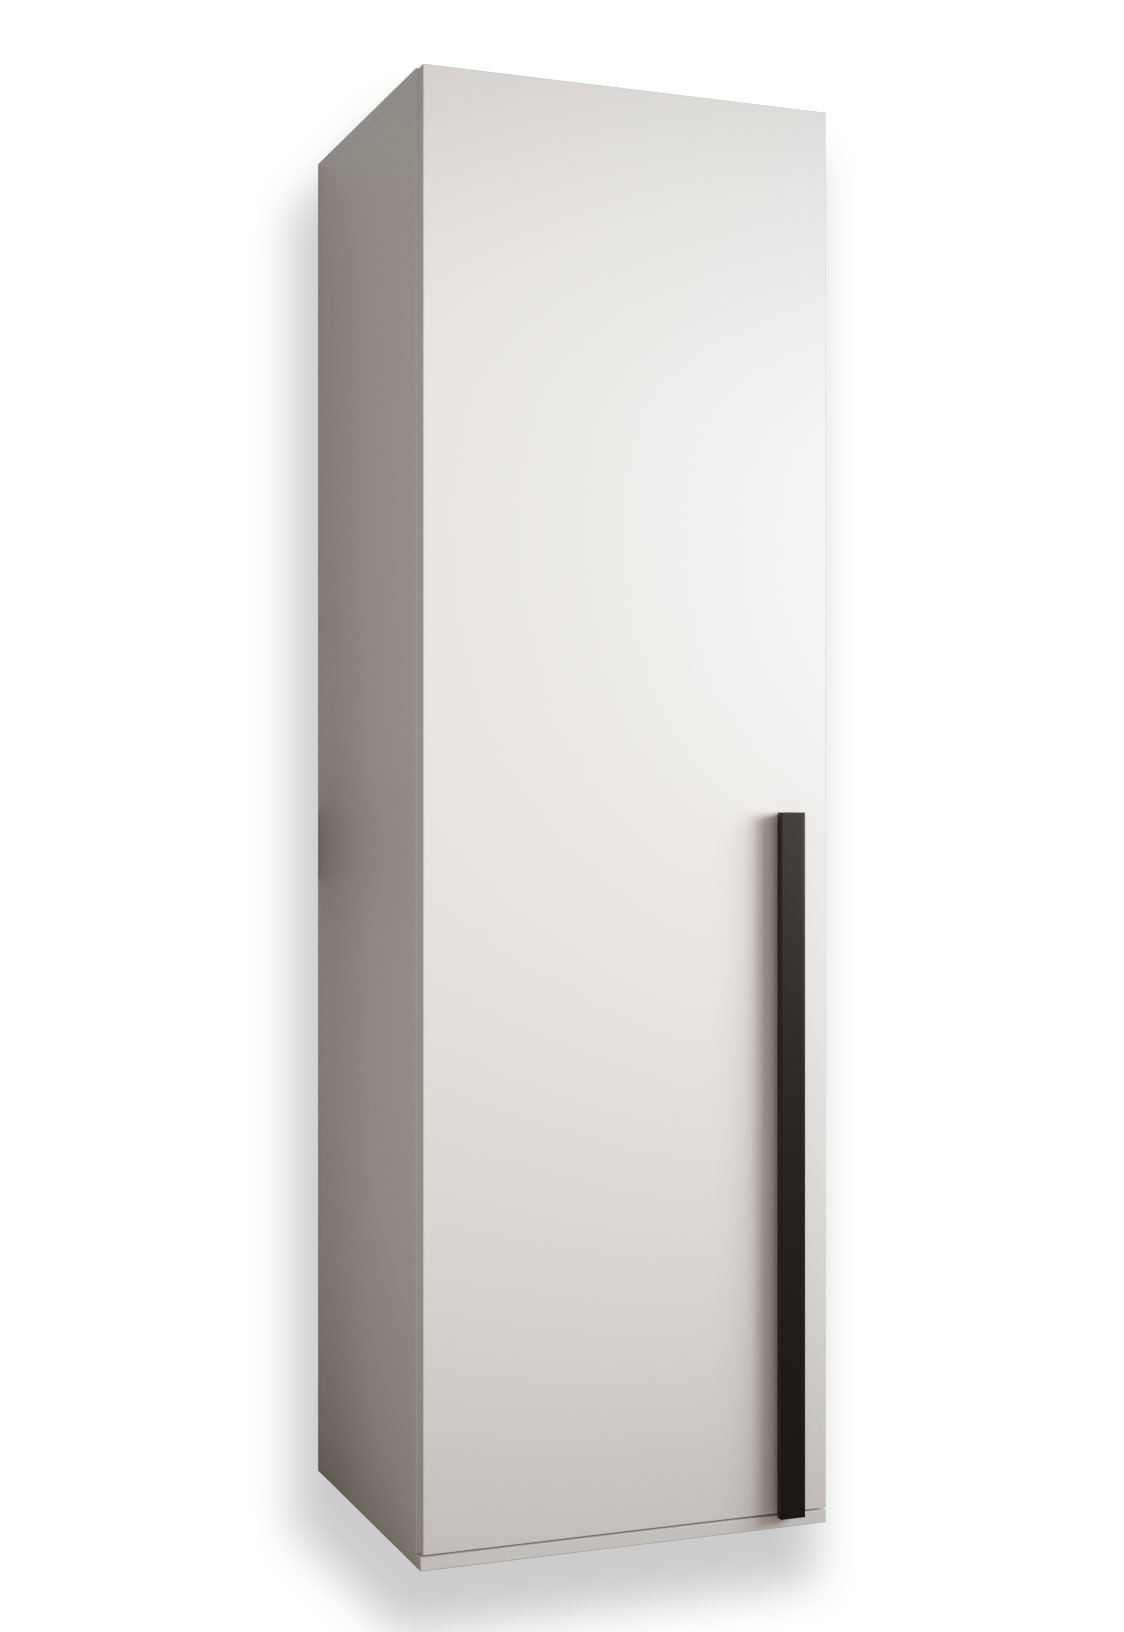 Armadio moderno Tödi 01, bianco opaco - misure: 184 x 50 x 42 cm (h x l x p), con 2 scomparti e una barra appendiabiti